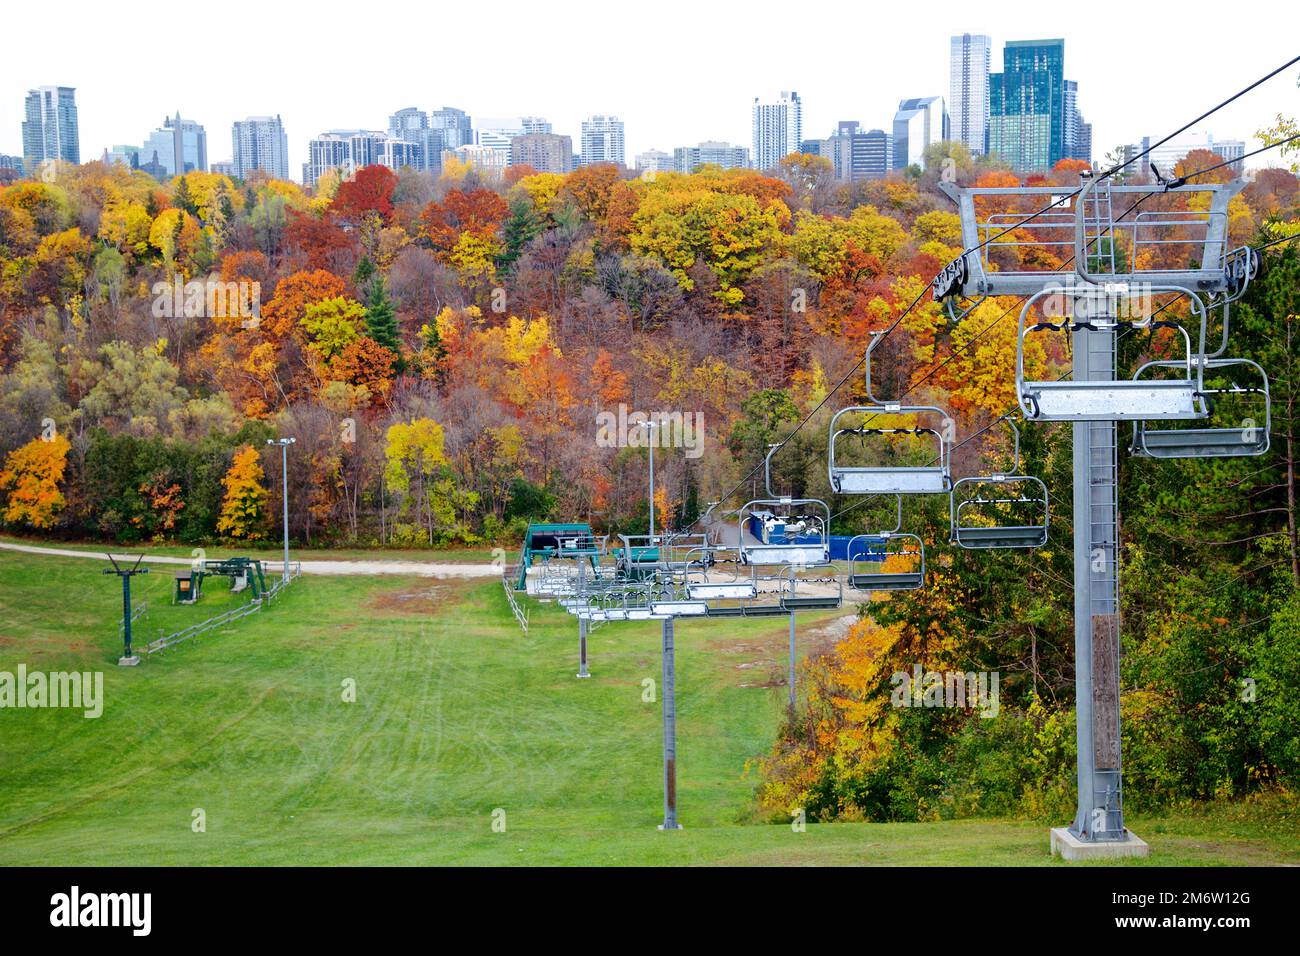 Vue en grand angle d'un centre urbain de ski et de surf des neiges à la couleur des feuilles d'automne, Ontario, Canada Banque D'Images